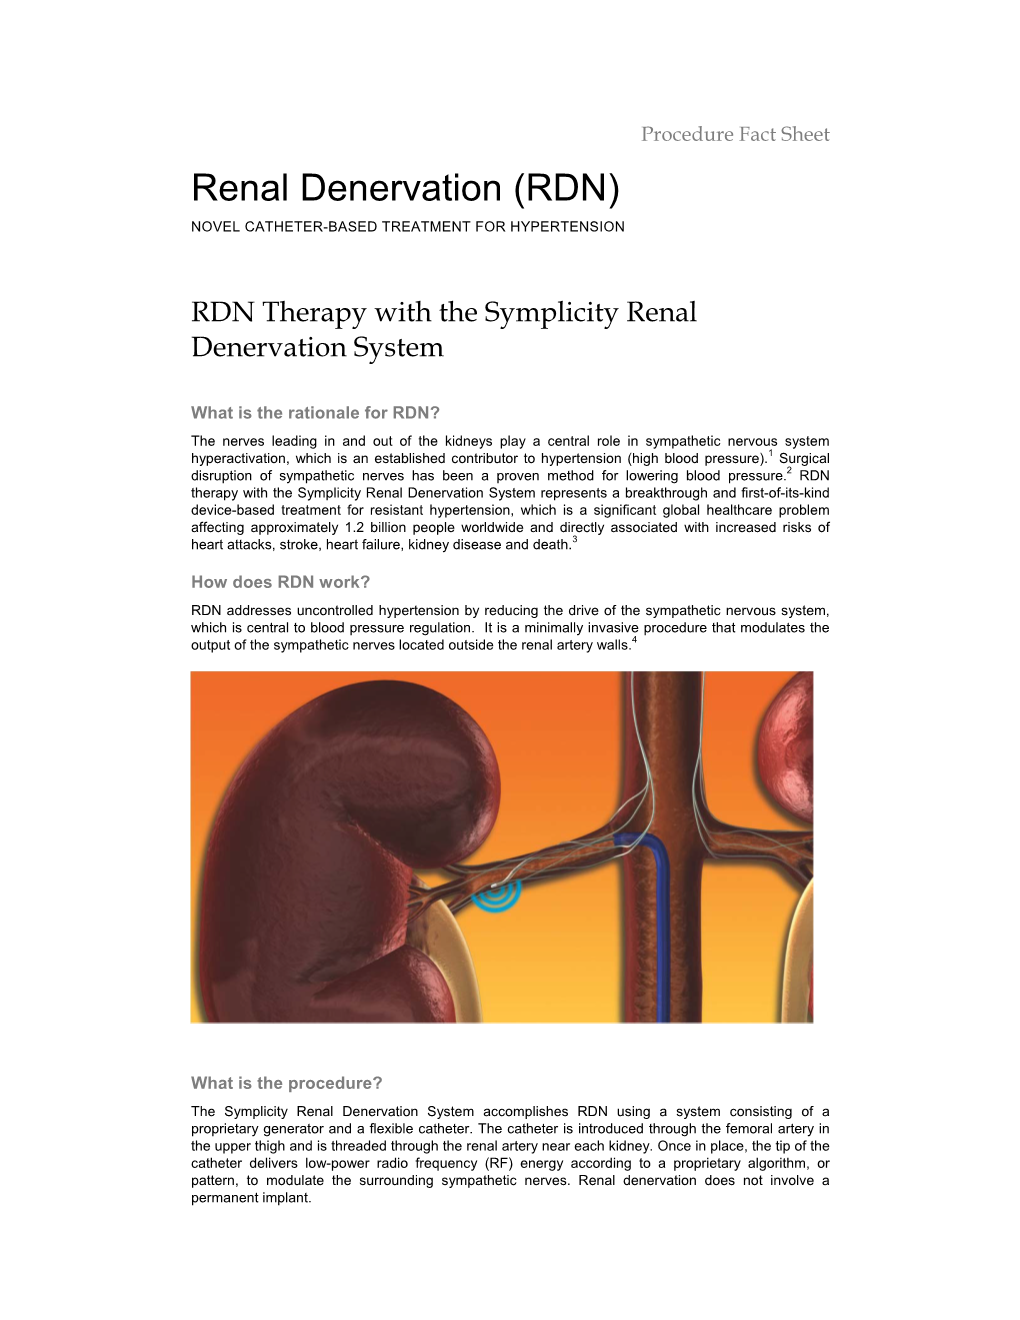 Renal Denervation (RDN) NOVEL CATHETER-BASED TREATMENT for HYPERTENSION